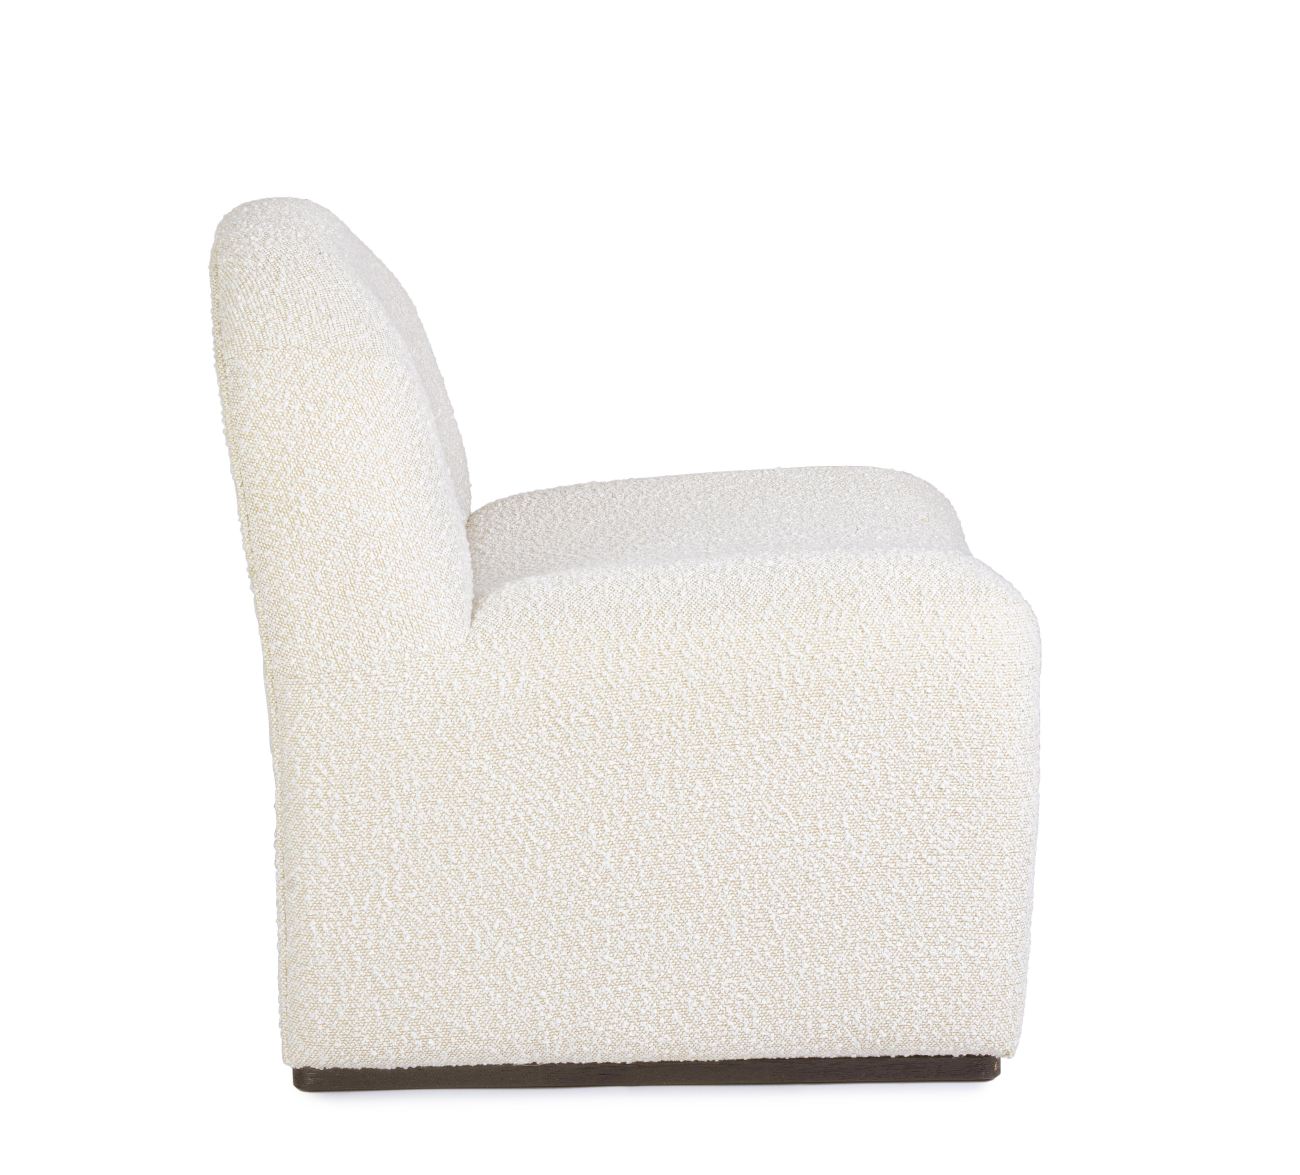 Der Sessel Bassilla überzeugt mit seinem modernen Stil. Gefertigt wurde er aus Boucle-Stoff, welcher einen natürlichen Farbton besitzt. Der Sessel besitzt eine Sitzhöhe von 42 cm.